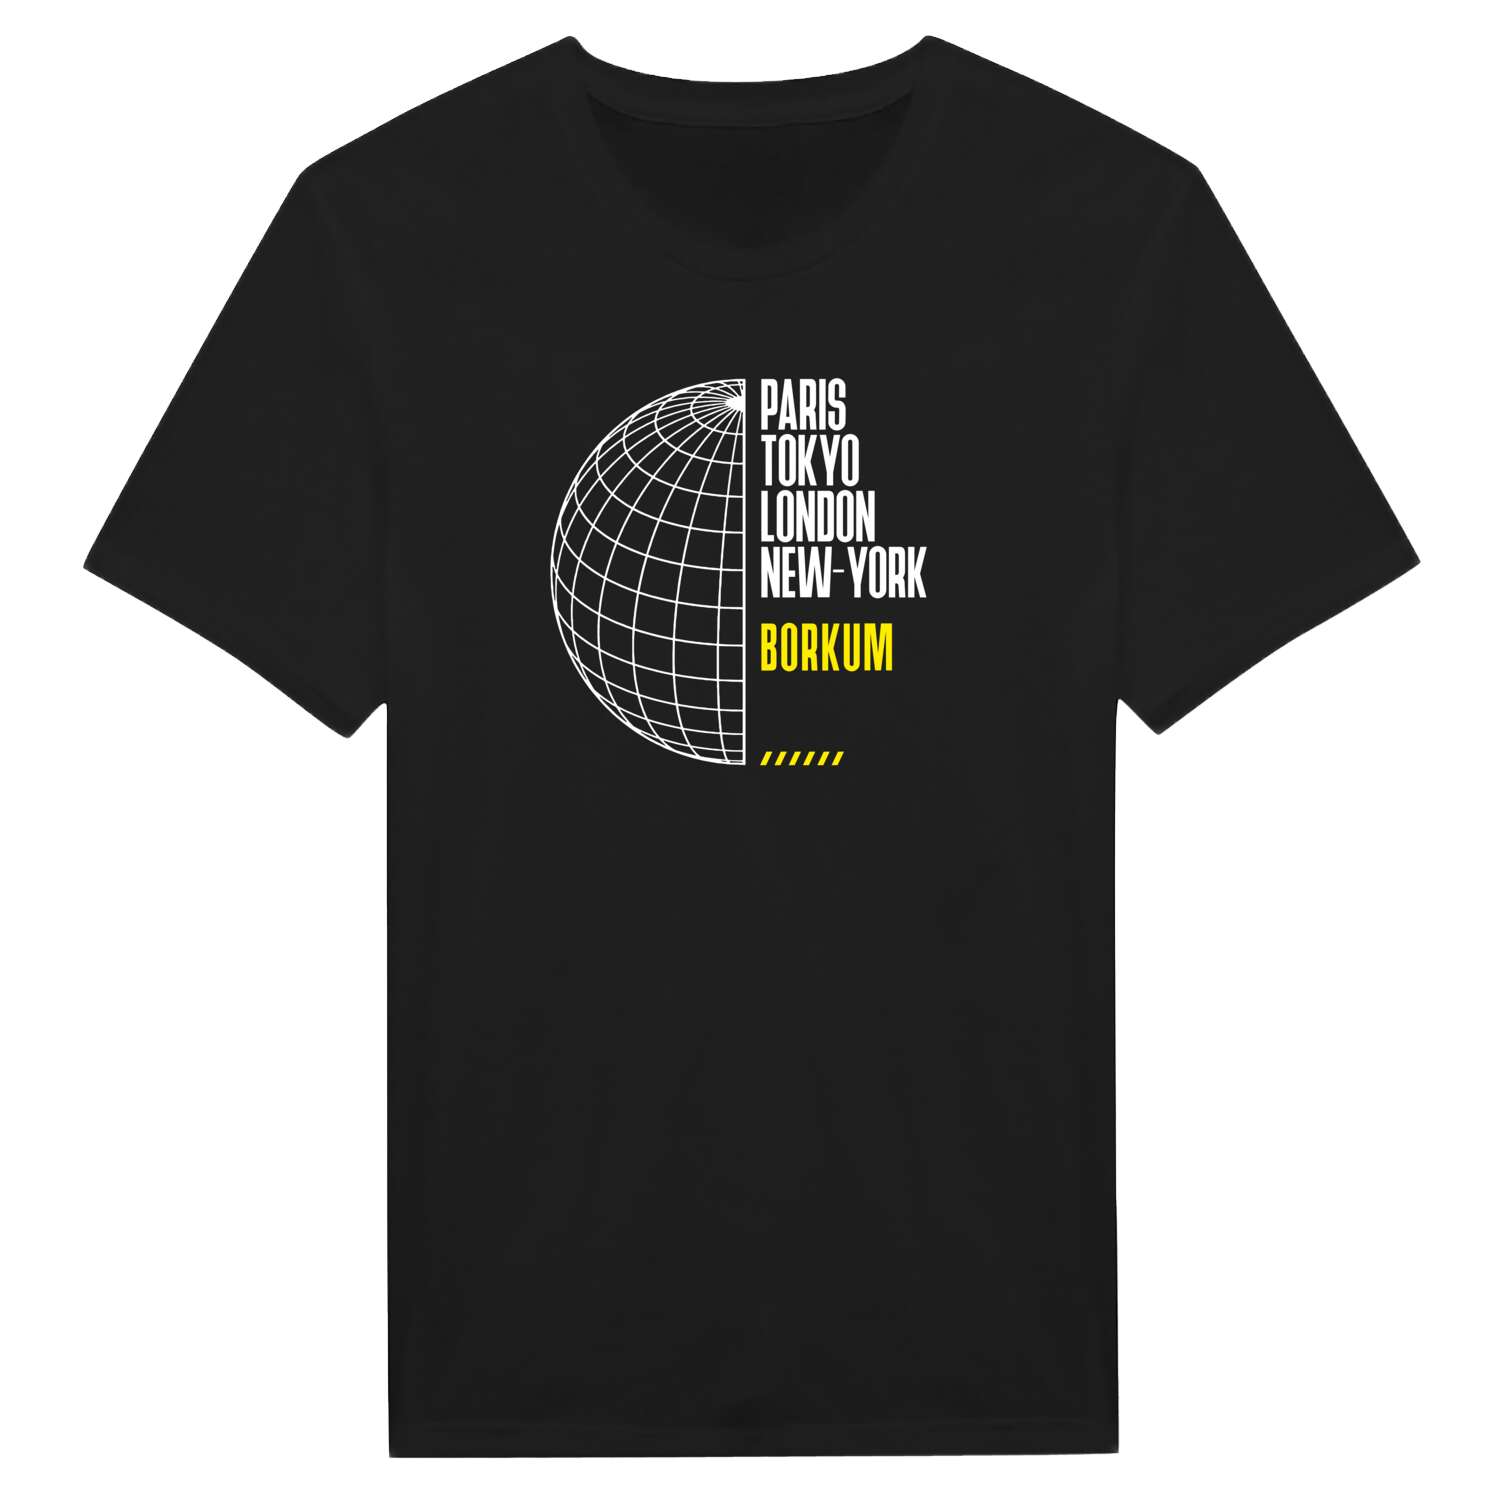 Borkum T-Shirt »Paris Tokyo London«